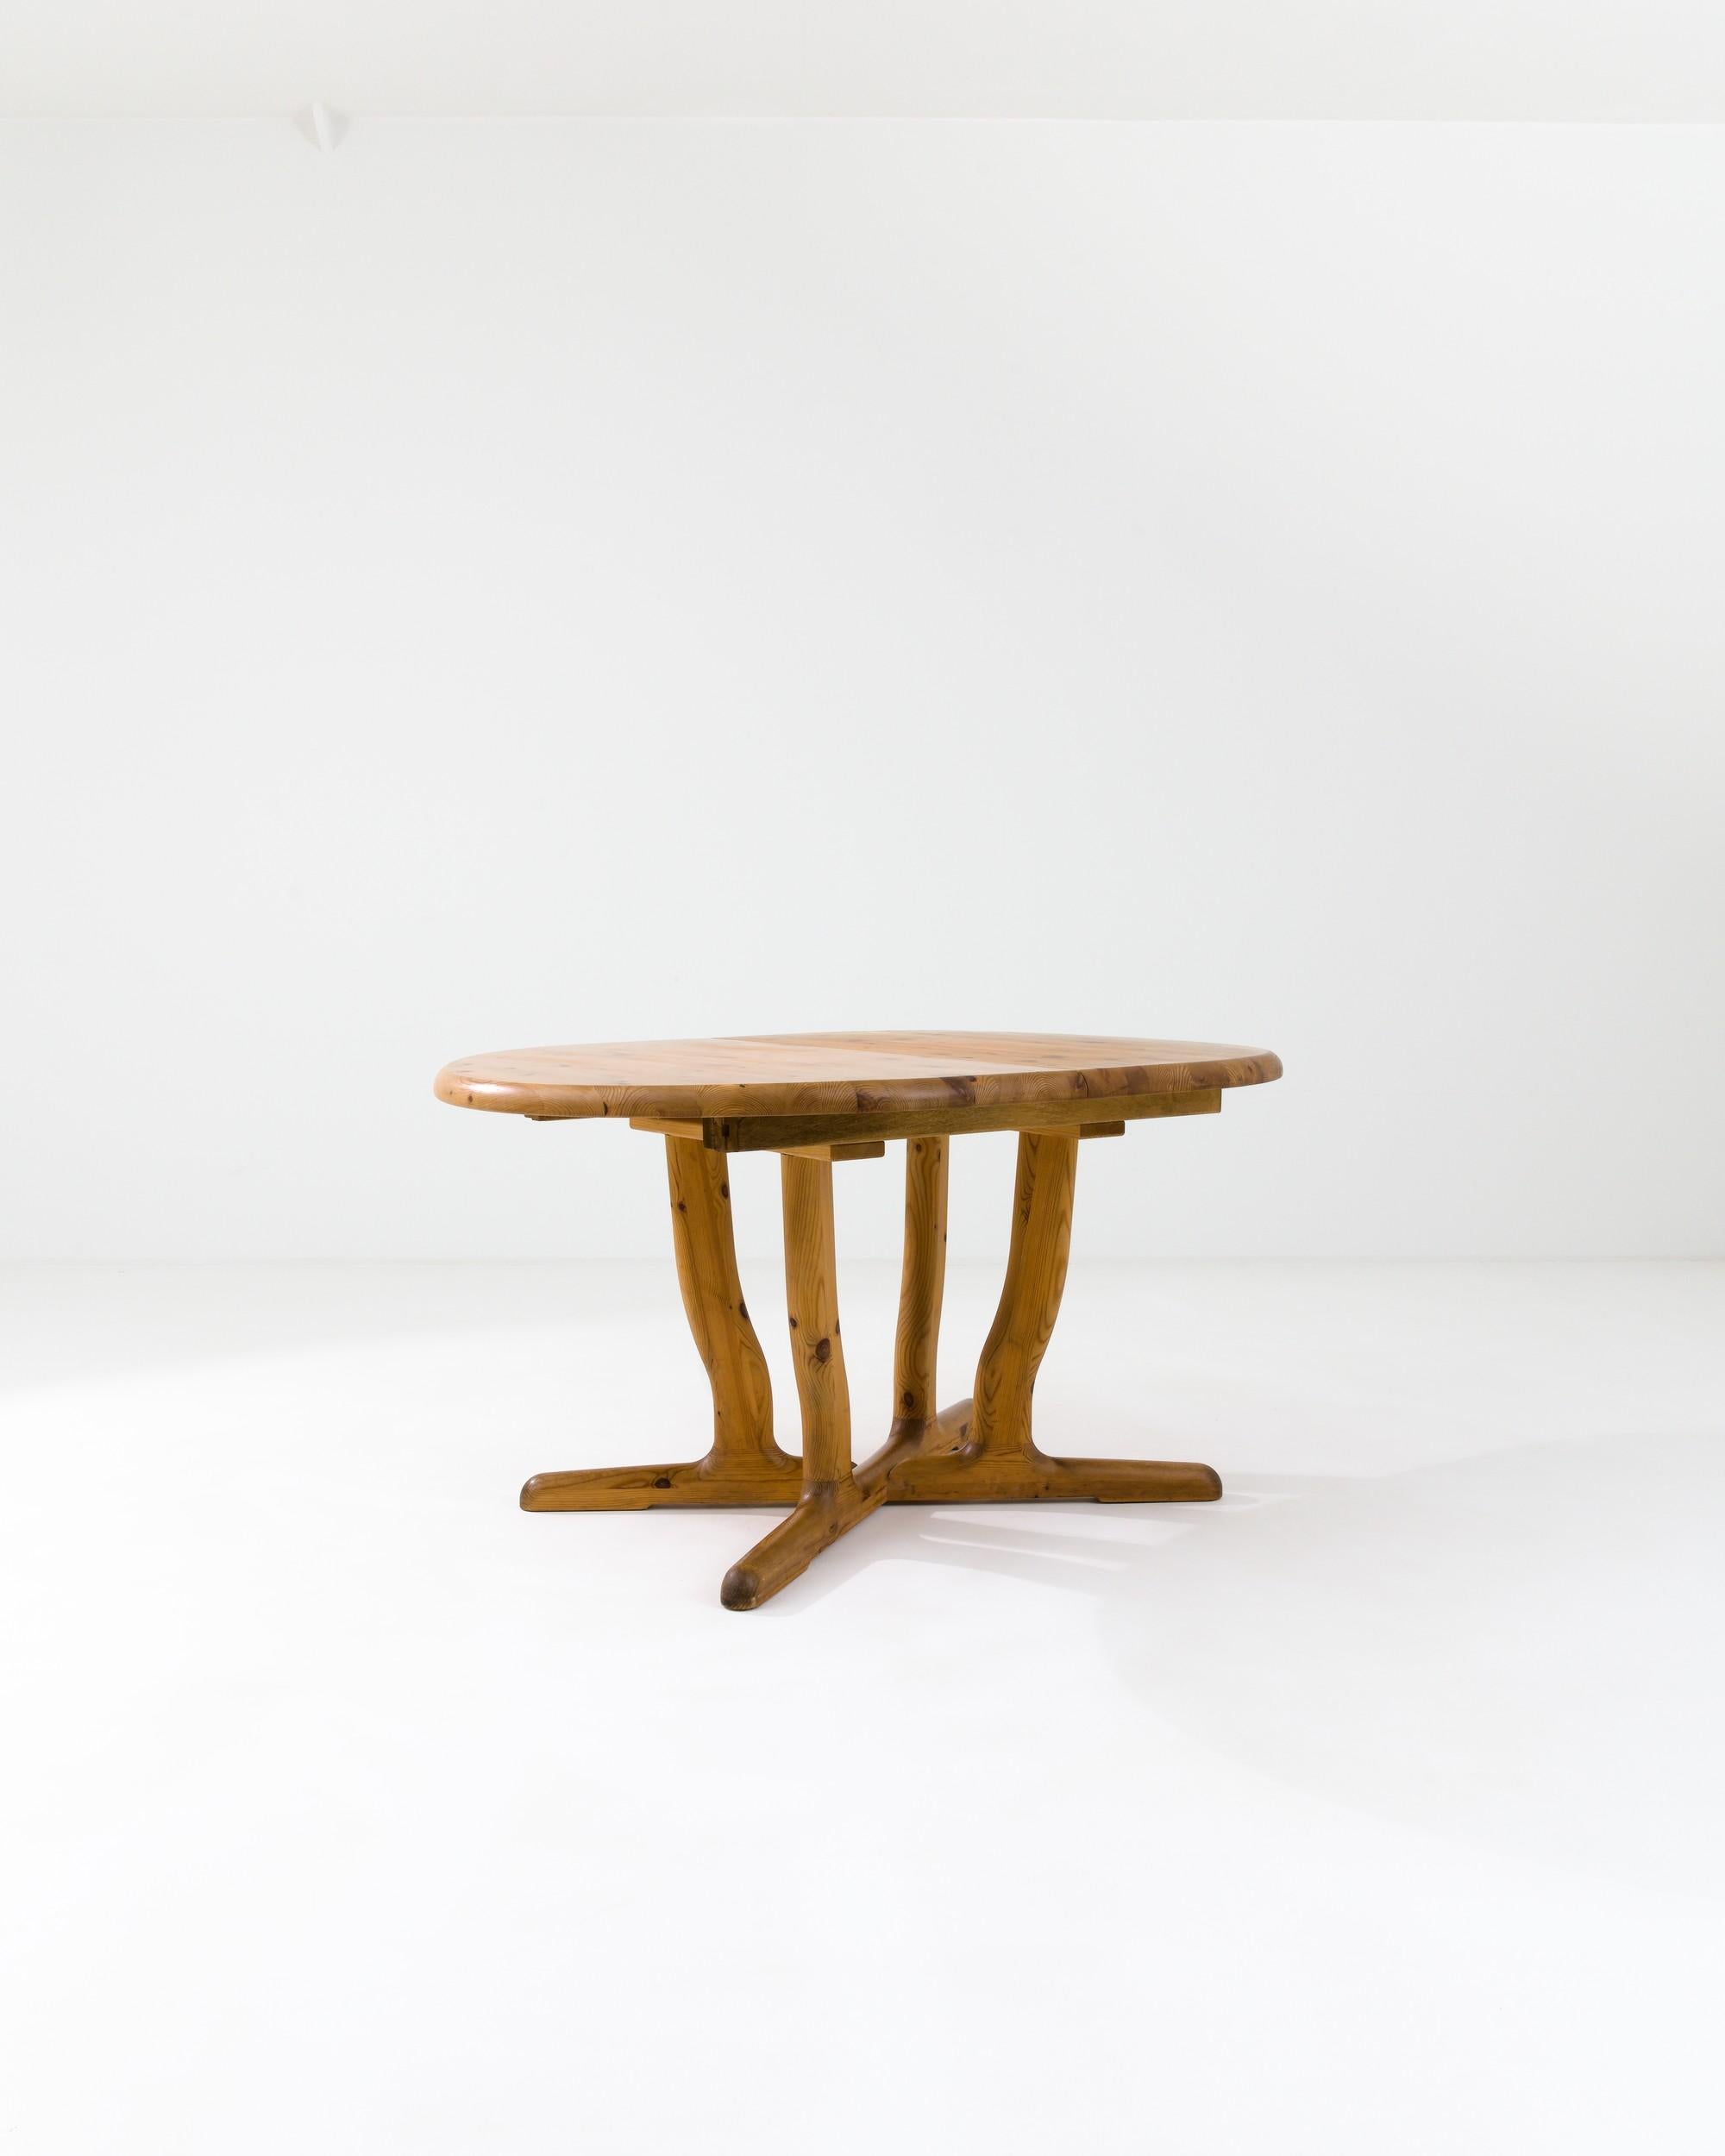 Cette élégante table vintage, fabriquée dans la Scandinavie du XXe siècle, dégage une impression de fluidité. Ses pieds légèrement incurvés sont mis en valeur par un grain de bois envoûtant naturellement orné de motifs captivants. Soutenu par une